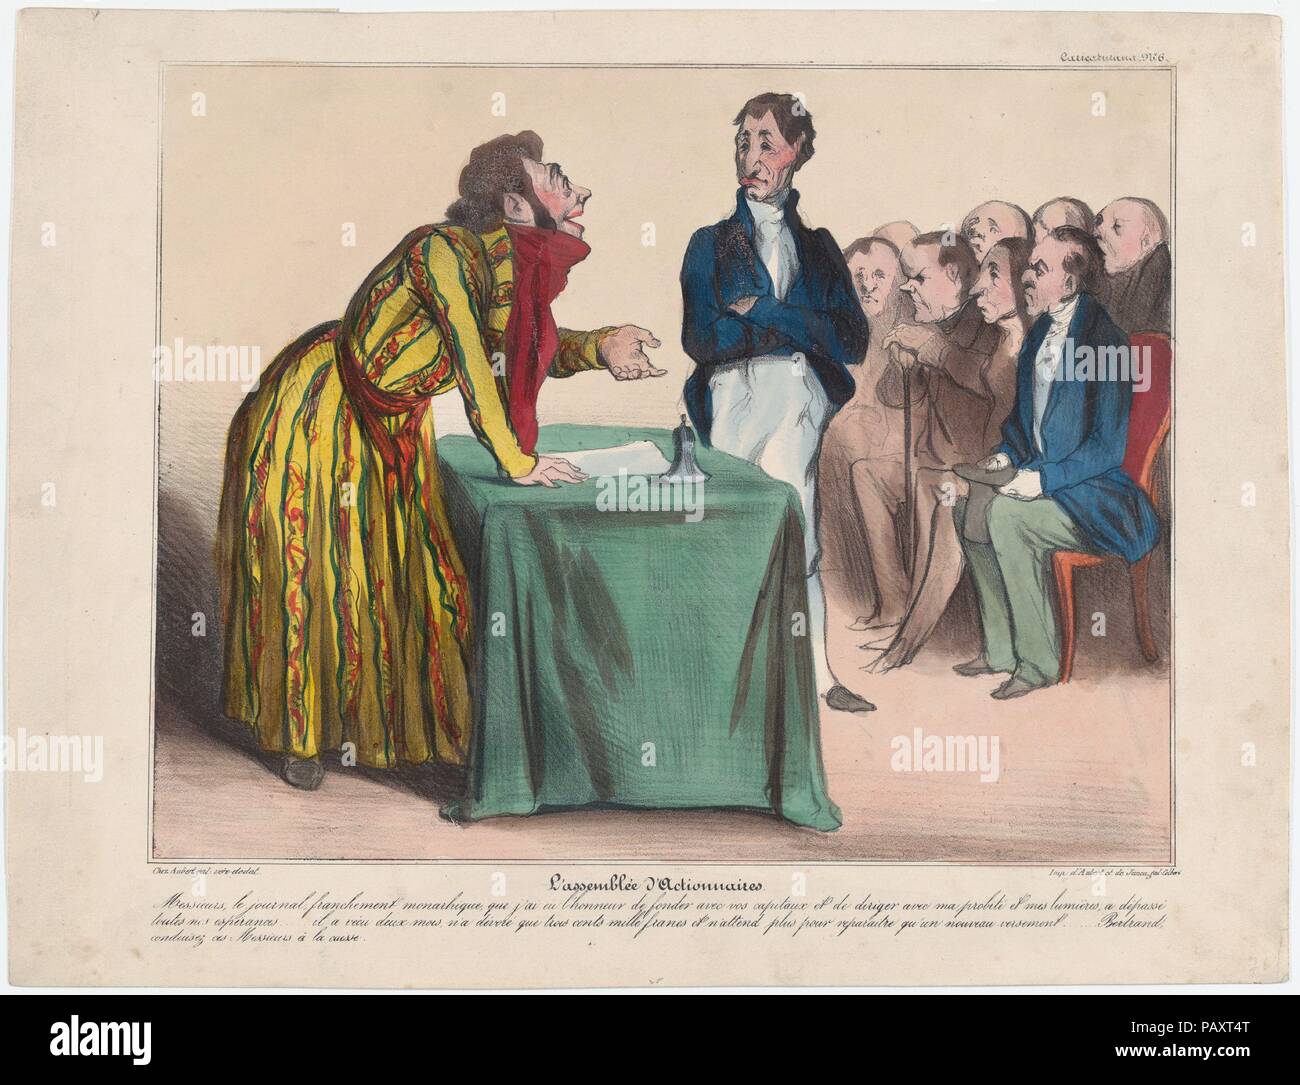 Platte 6: Aktionäre', von 'Caricaturana", in Les Robert Macaires veröffentlicht. Artist: Honoré Daumier (Französisch, Marseille 1808-1879 Valmondois). Autor: Charles Philipon (Französisch, Lyons 1800-1862 Paris). Abmessungen: Bild: 8 9/16 x 10 7/8 in. (21,7 × 27,7 cm) Blatt: 10 9/16 × 13 11/16 in. (26,8 × 34,8 cm). Drucker: Aubert et Cie; Junca. Serie/Portfolio: 'Caricaturana'. Datum: 1838. Herren, die monarchistische Zeitung, die ich die Ehre hatte, Gründung mit Hilfe ihres Kapitals und meine Fähigkeiten meine kühnsten Erwartungen und Hoffnungen übertroffen... es zwei Monate lebte, nur drei verschlungen Stockfoto